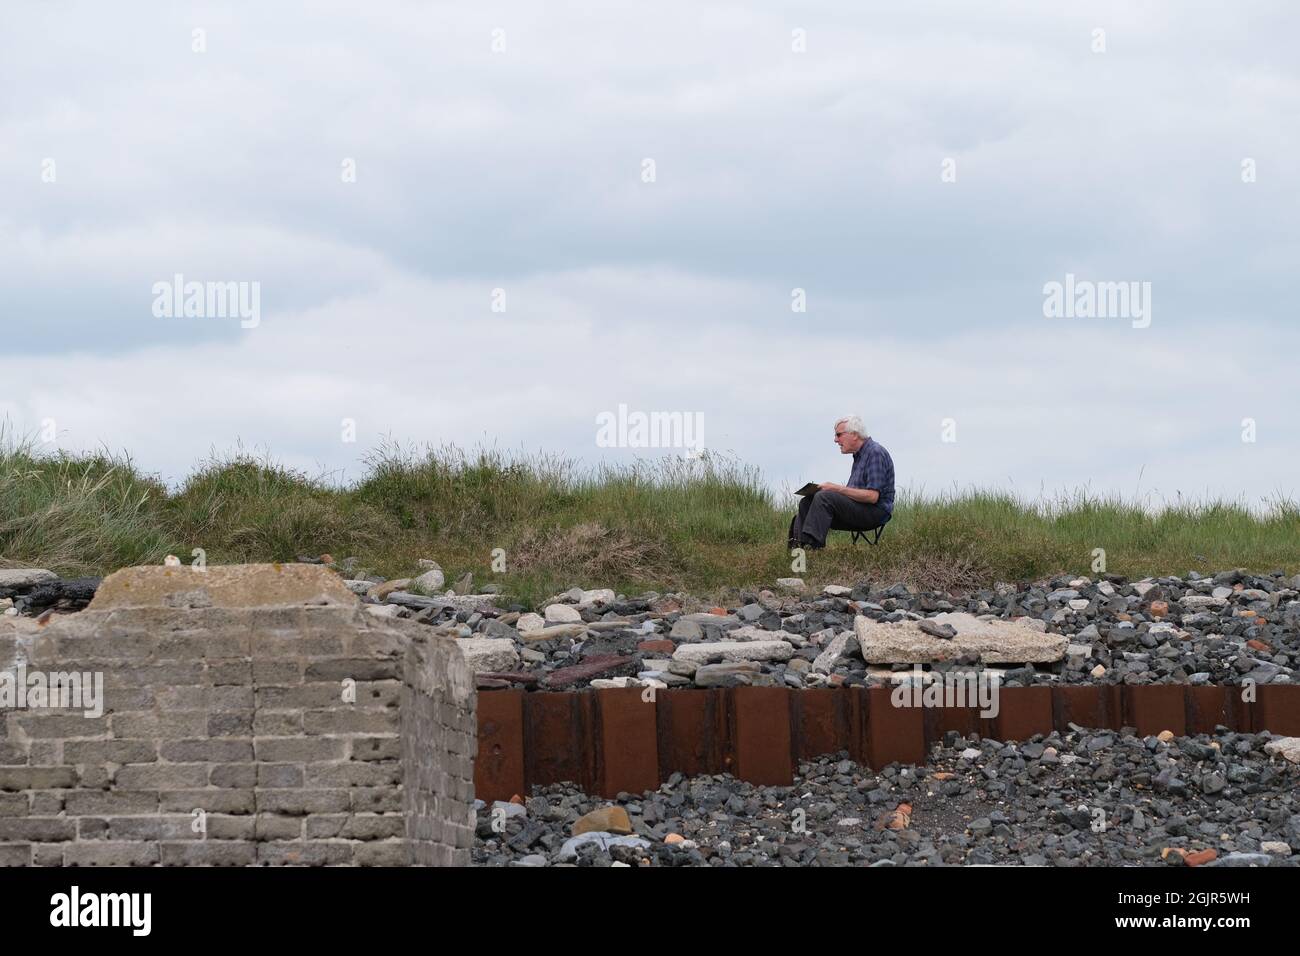 Un artista seduto sul sito dell'ex centrale elettrica di Carmarthen Bay, che si affaccia su una spiaggia al Porto di Burry. I resti dell'edificio industriale demolito, la spiaggia e l'amianto sono stati scoperti dall'erosione delle maree. I segnali di avvertimento sono stati posti nelle vicinanze dall'autorità locale. Foto Stock